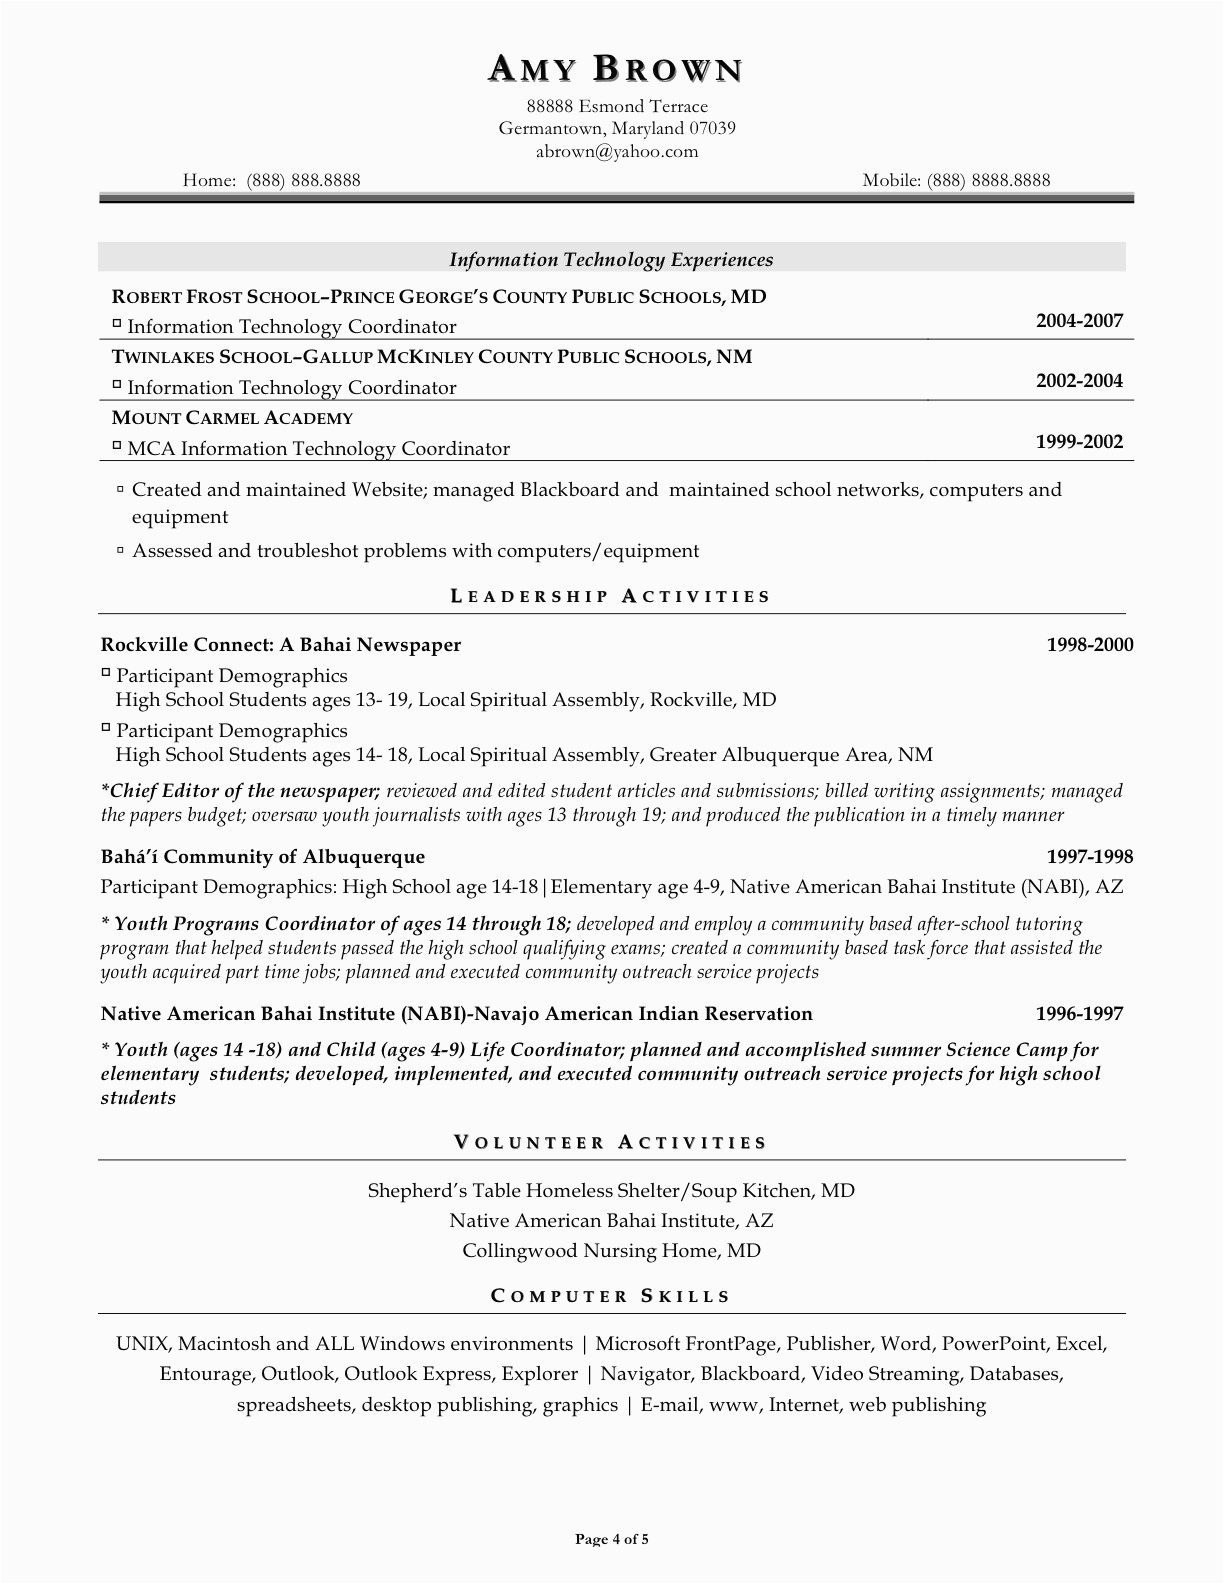 Sample Resume for Us University Application Sample College Application Resume Ivy League